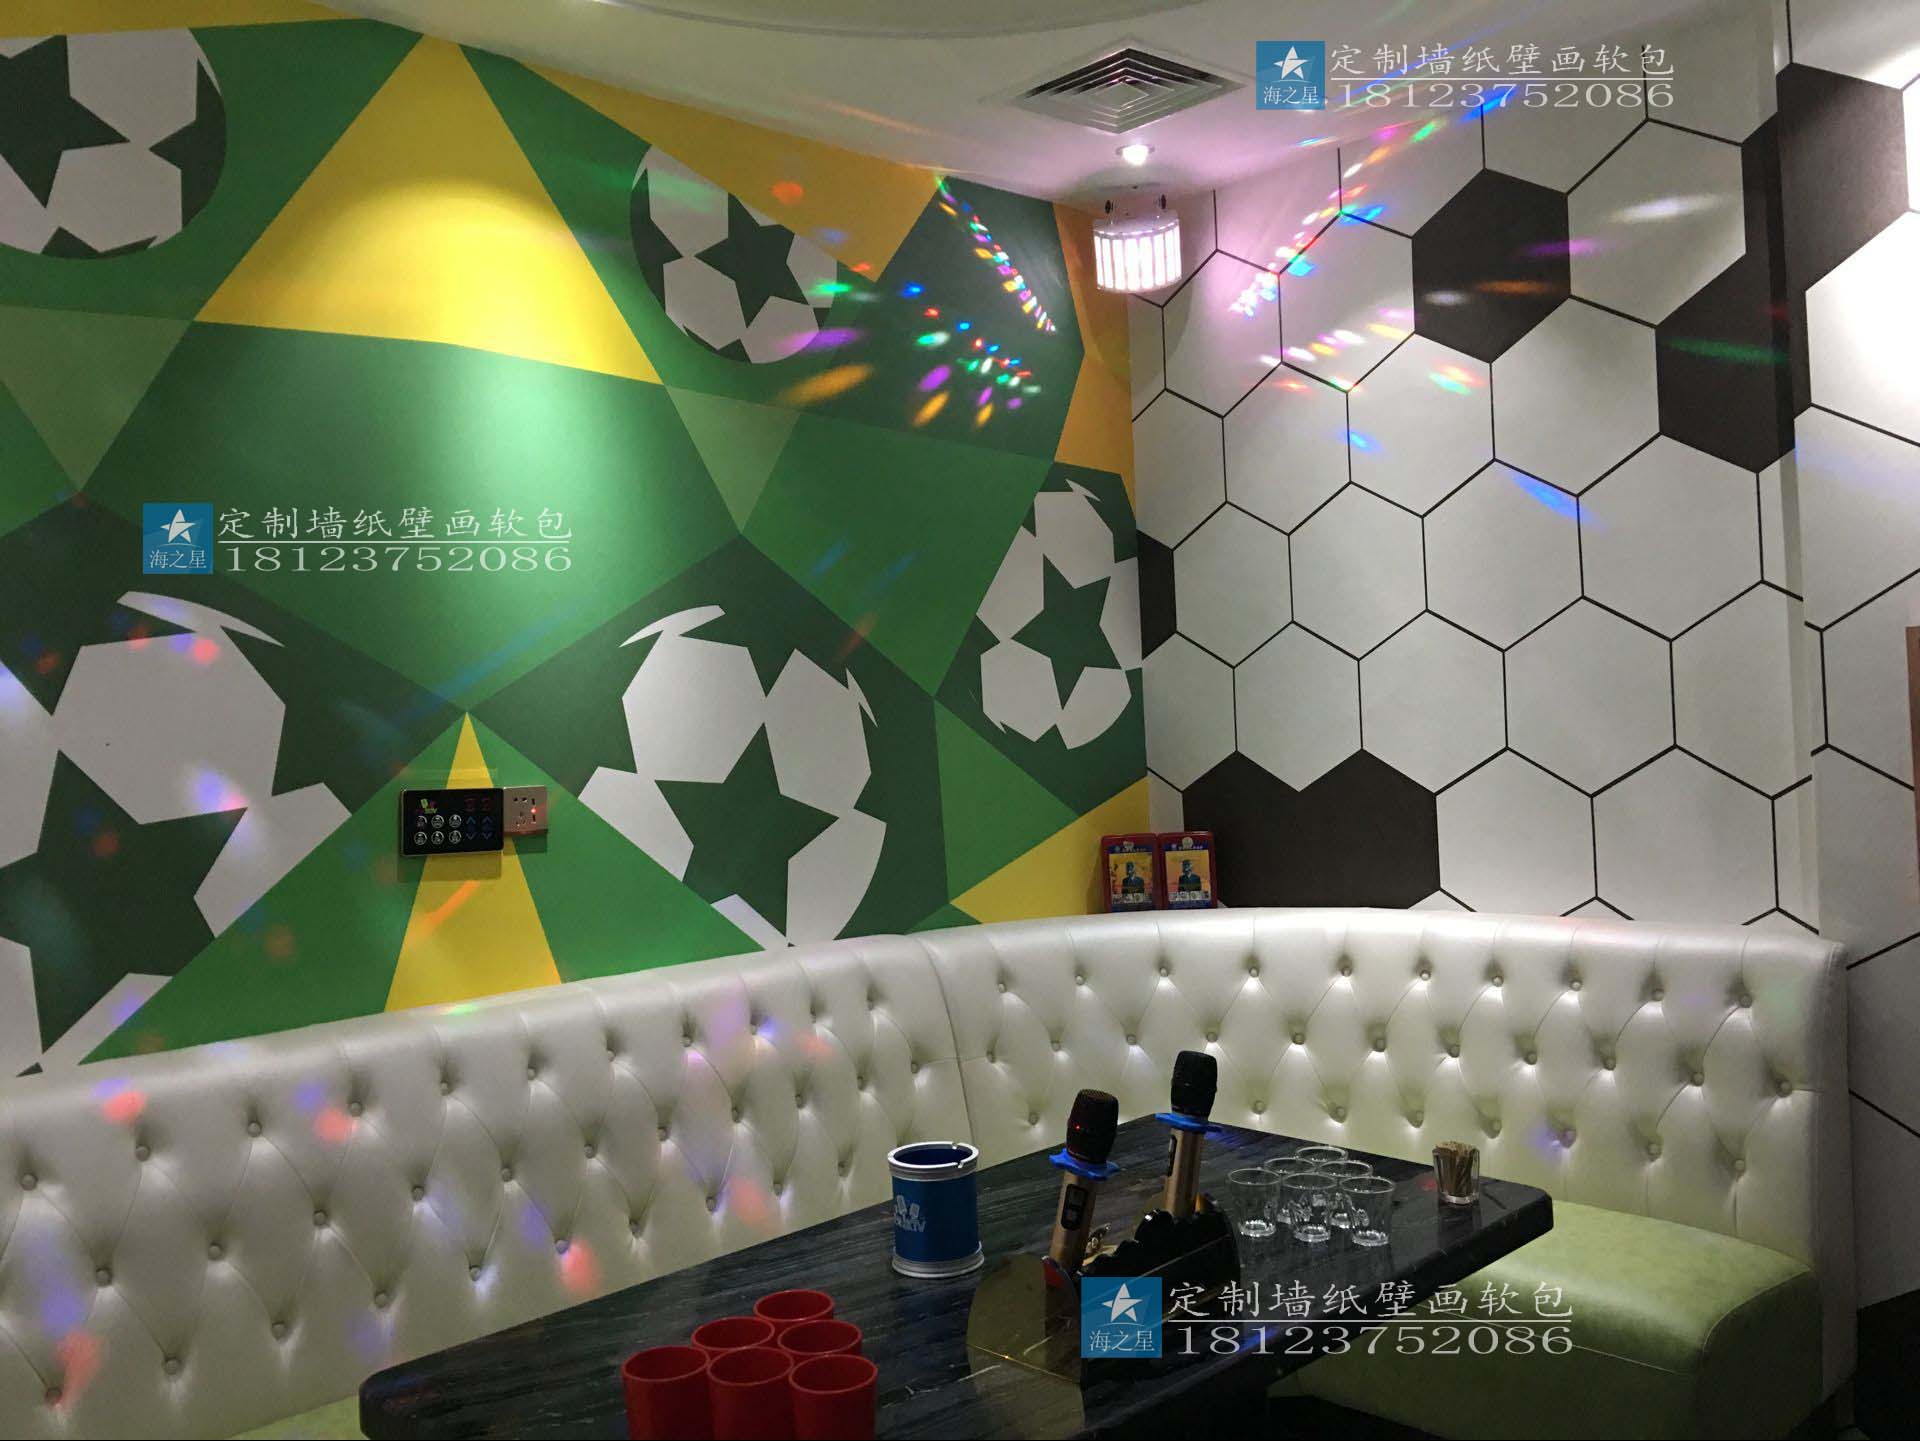 KTV装修墙纸效果 酒吧包房大型3D壁画 背景墙足球主题墙纸壁画